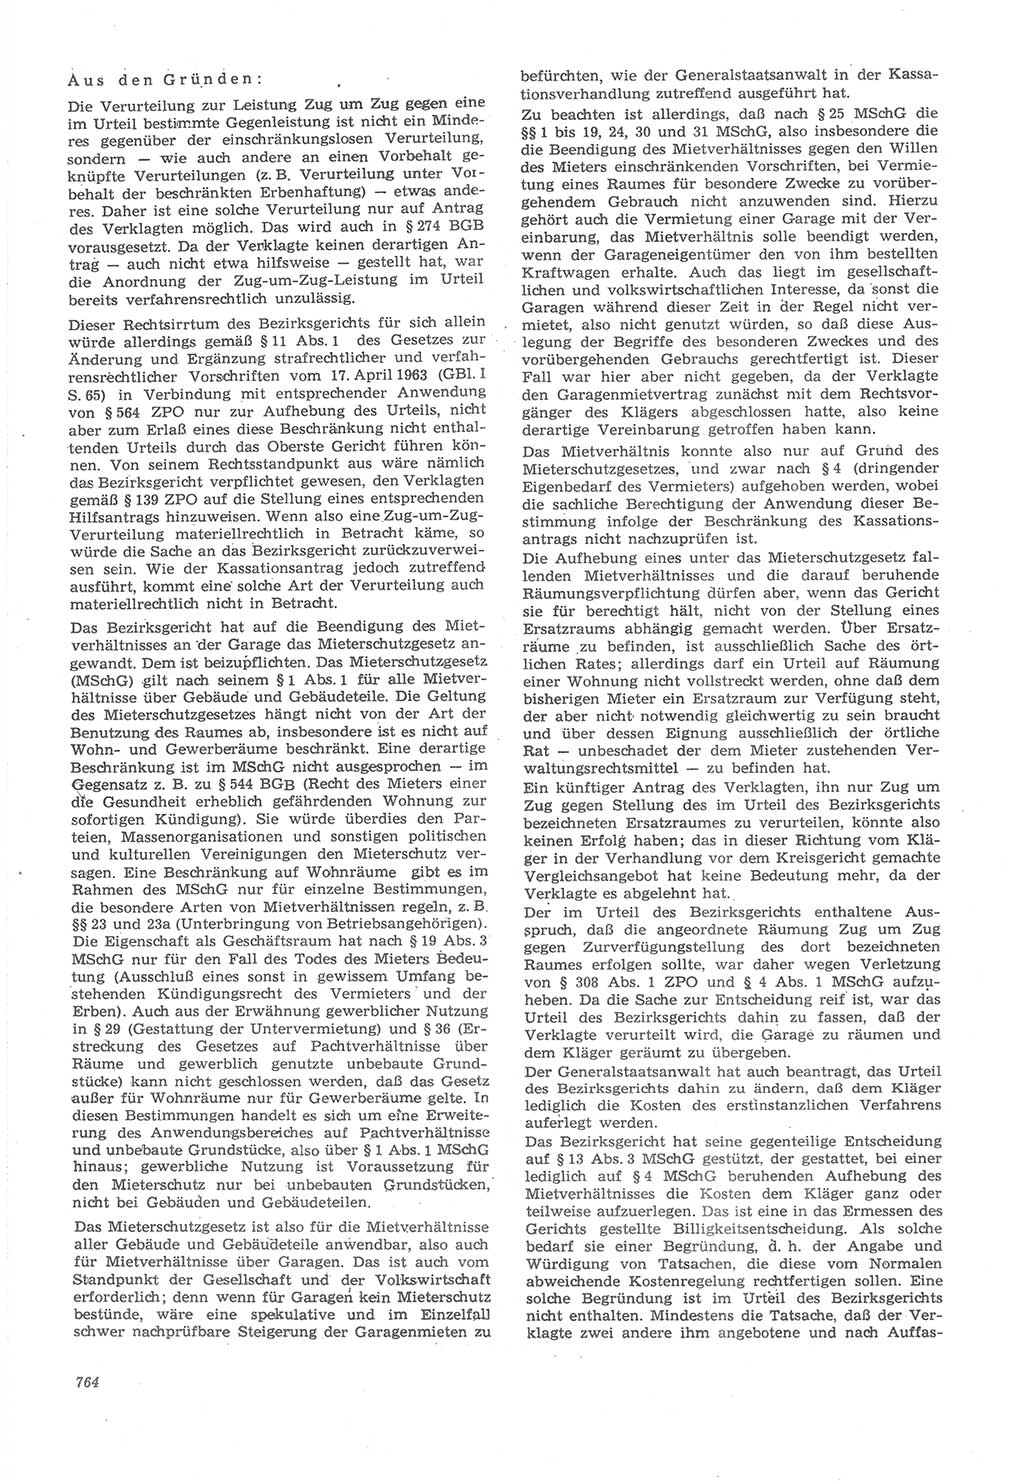 Neue Justiz (NJ), Zeitschrift für Recht und Rechtswissenschaft [Deutsche Demokratische Republik (DDR)], 22. Jahrgang 1968, Seite 764 (NJ DDR 1968, S. 764)